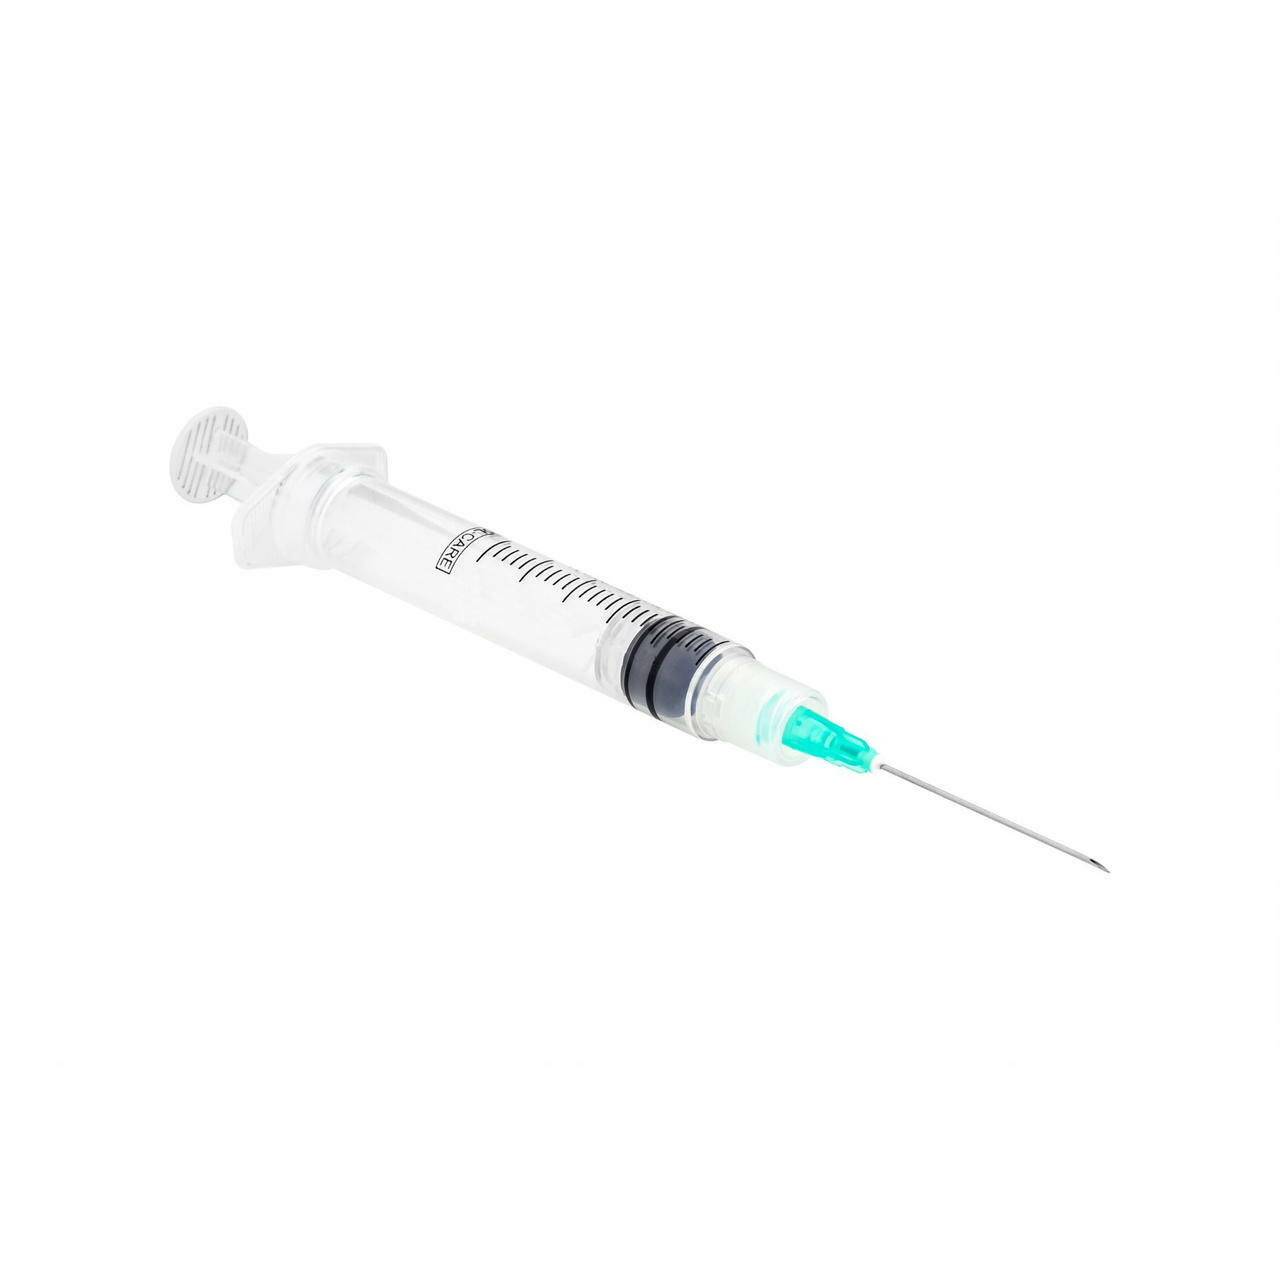 10ml 21g 1.5 inch Sol-Care Luer Lock Safety Syringe and Needle - UKMEDI